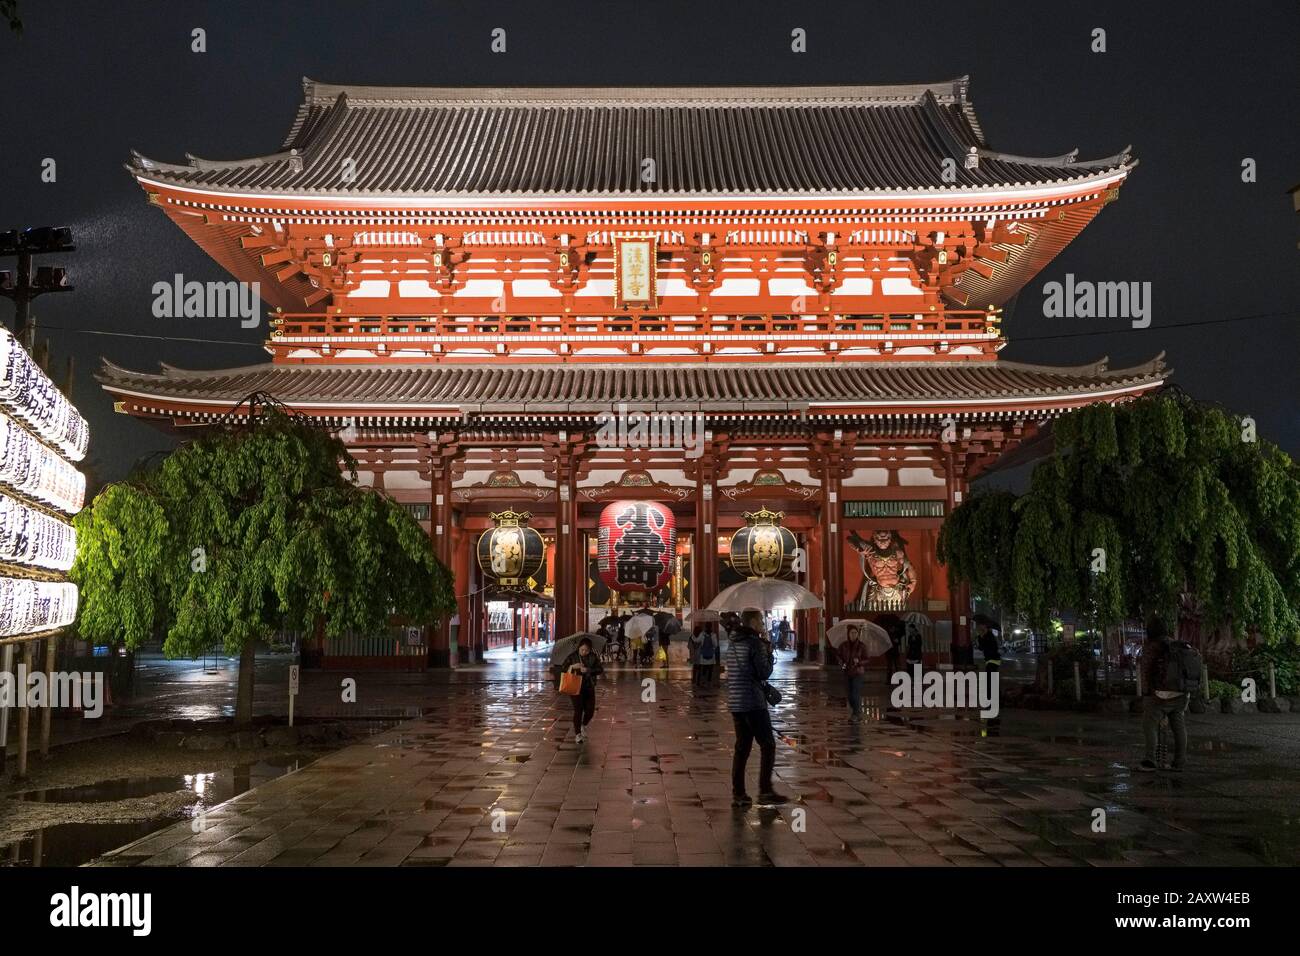 Giappone, Tokyo: Tempio senso-ji nel quartiere di Asakusa. Ingresso al tempio e lanterna gigante sospesa dalla porta Kaminarimon, vista a Nigh Foto Stock